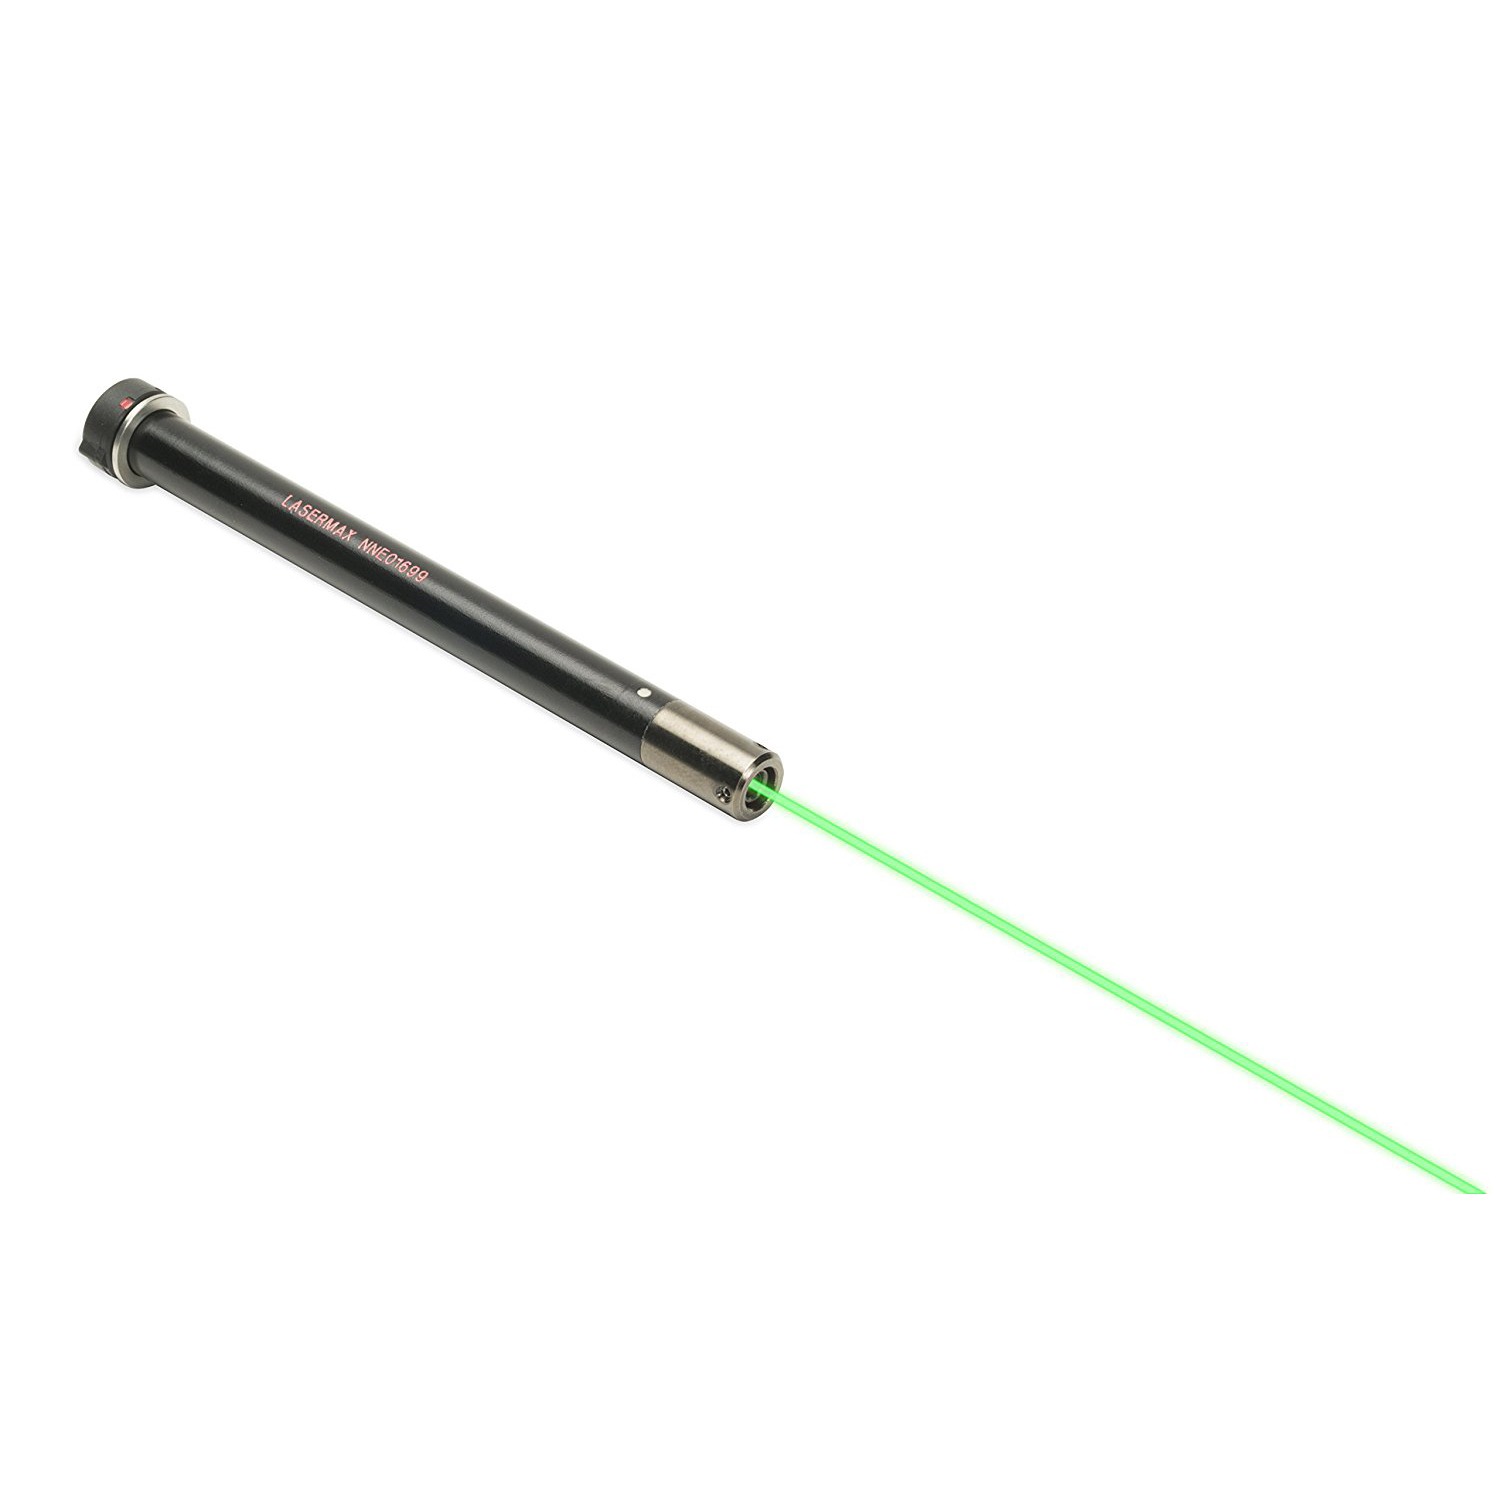 Lasermax Green Beretta / Taurus Gıide Rod Laser - 0.40 Oz